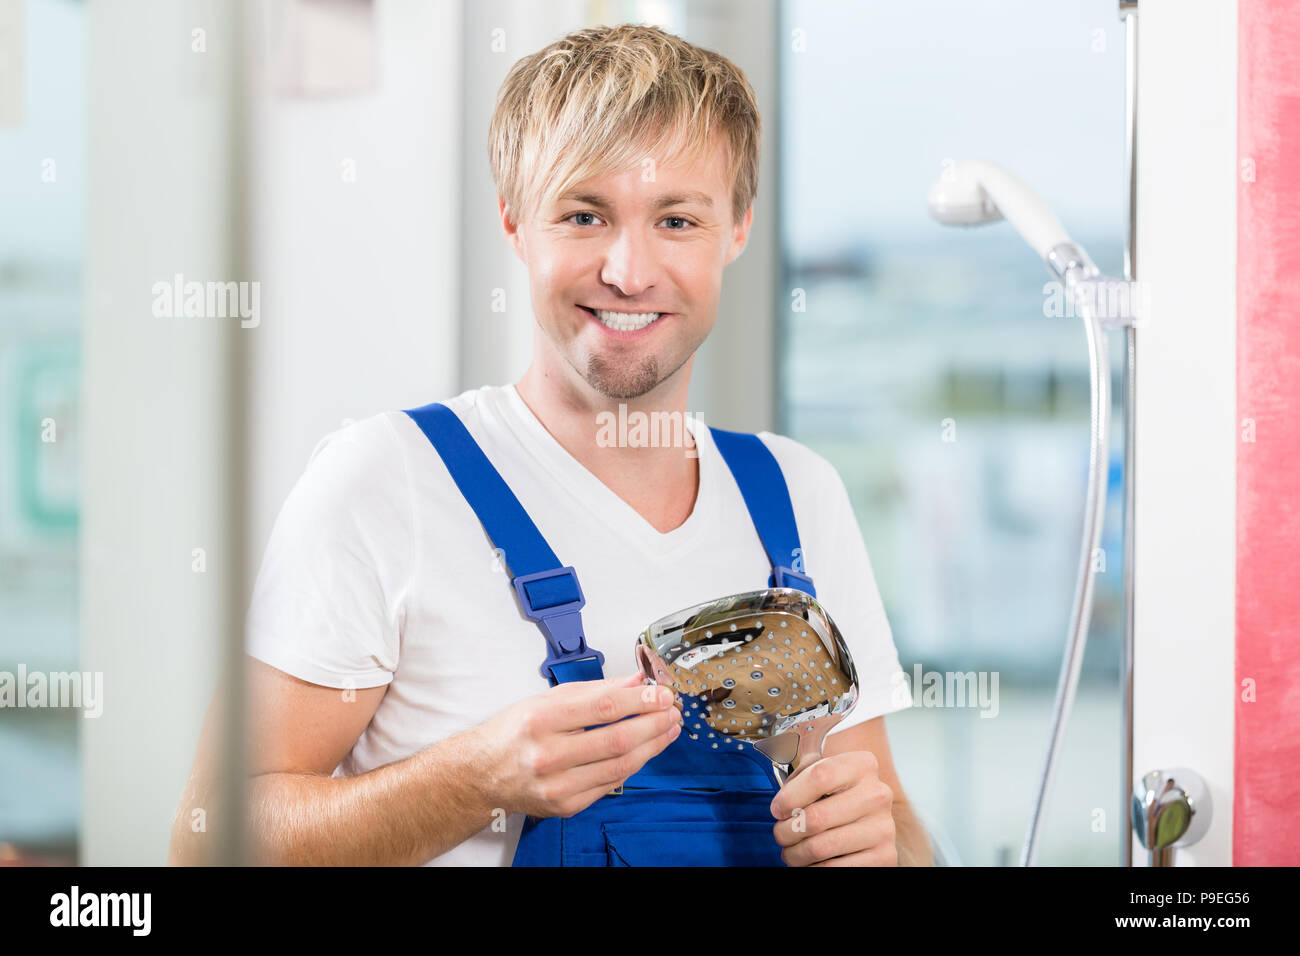 Portrait of a smiling worker holding entretien un robinet Banque D'Images